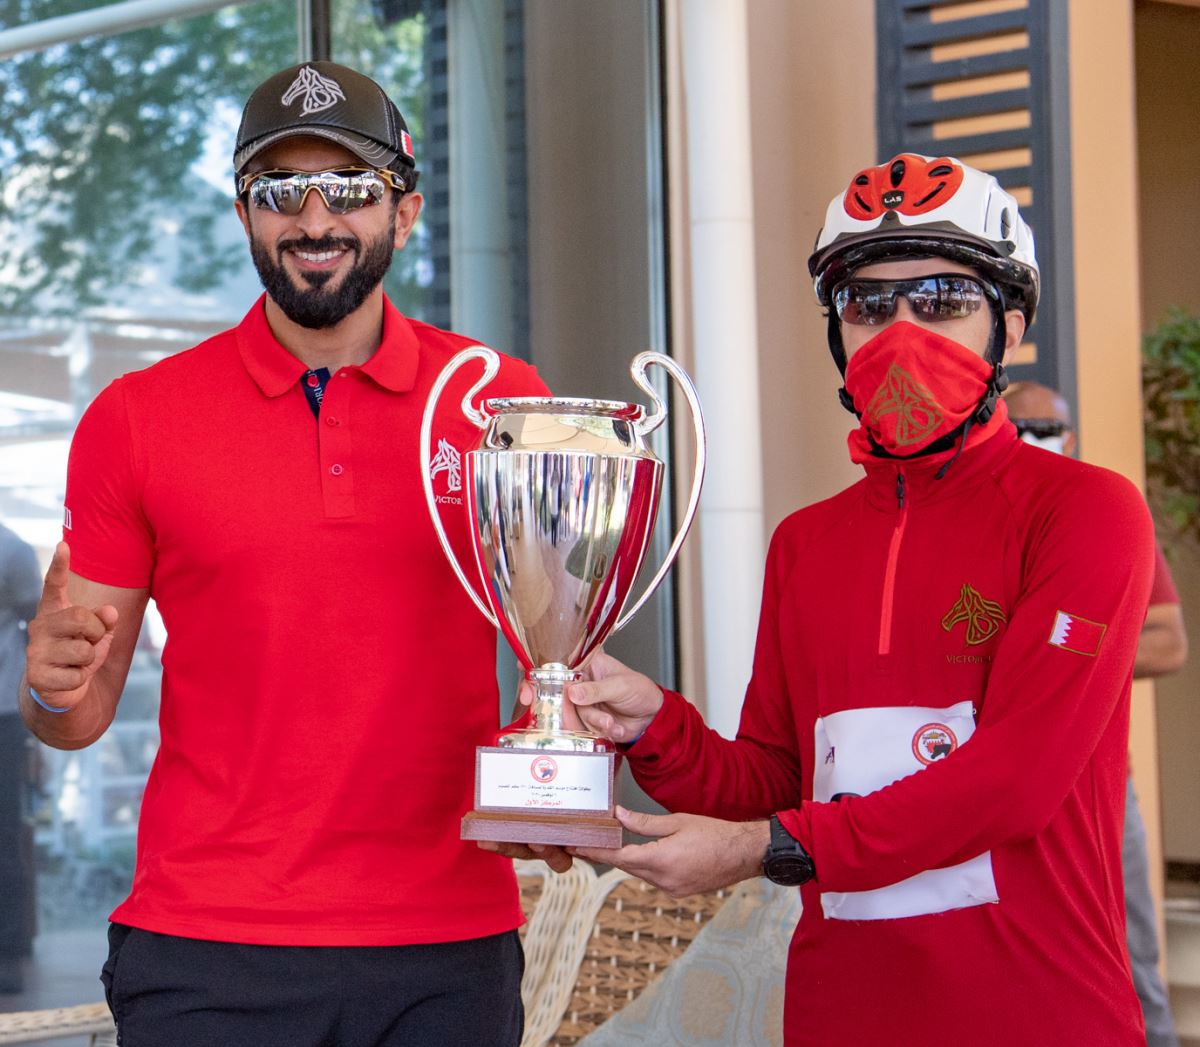 بالصور.. فريق فيكتوريوس يفوز بلقب سباق القدرة الدولي في البحرين لمسافة 120 كيلو متر